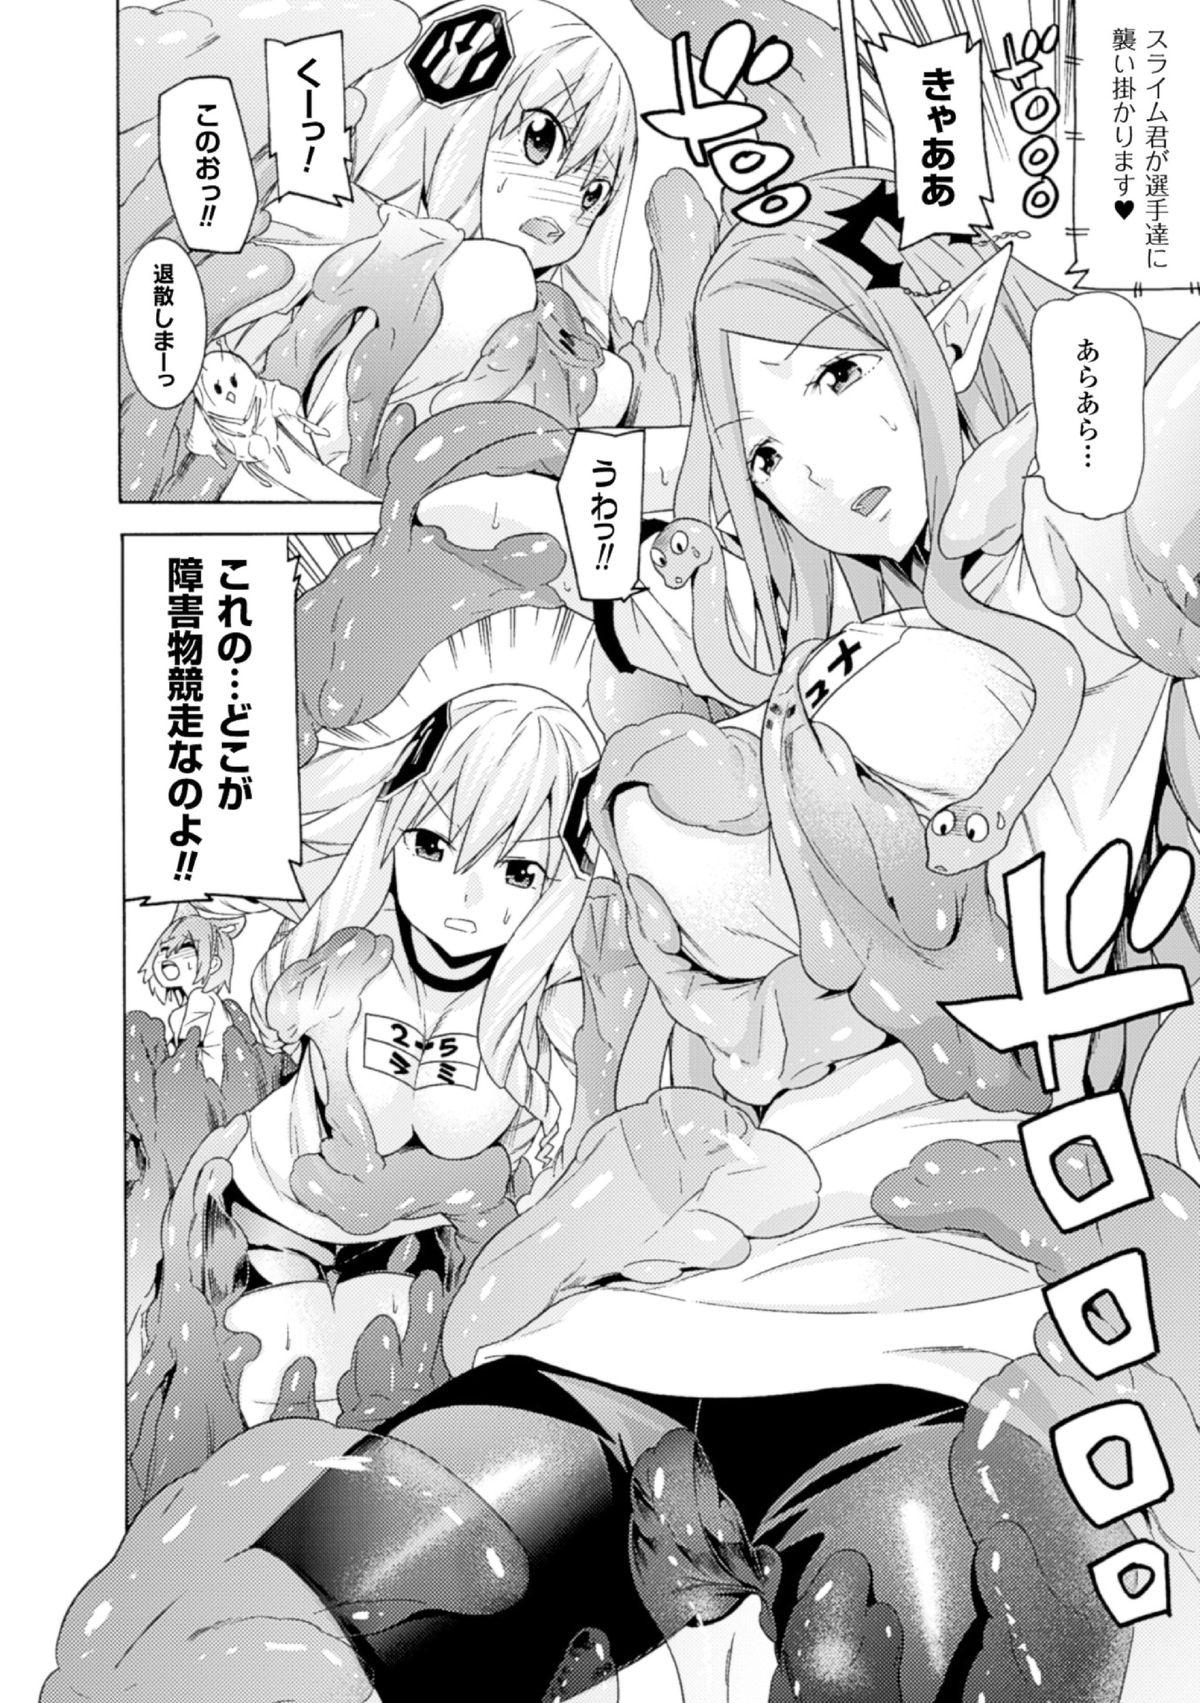 Fantasy Massage 2D Comic Magazine - Monster Musume ga Tsudou Ishuzoku Gakuen e Youkoso! Vol. 2 Free - Page 10